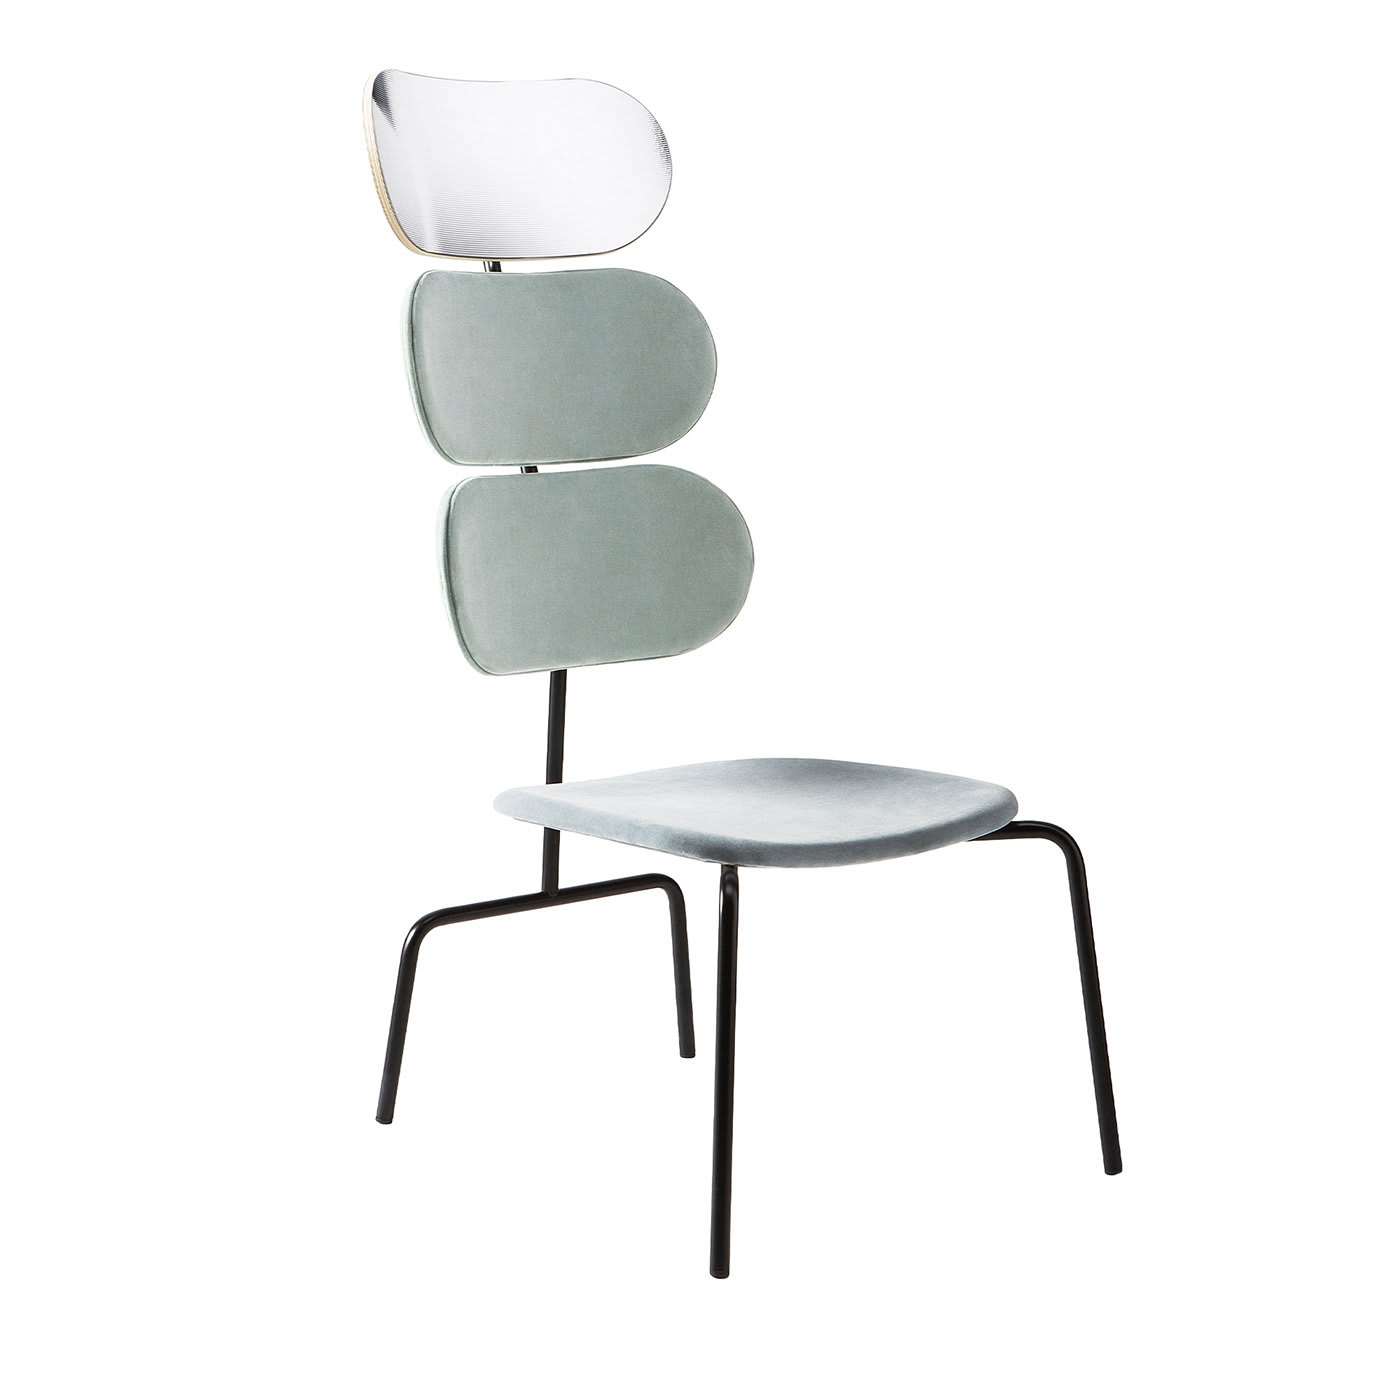 Lombrello Mackintosh Green Chair by Andrea Forapani - Lombrello